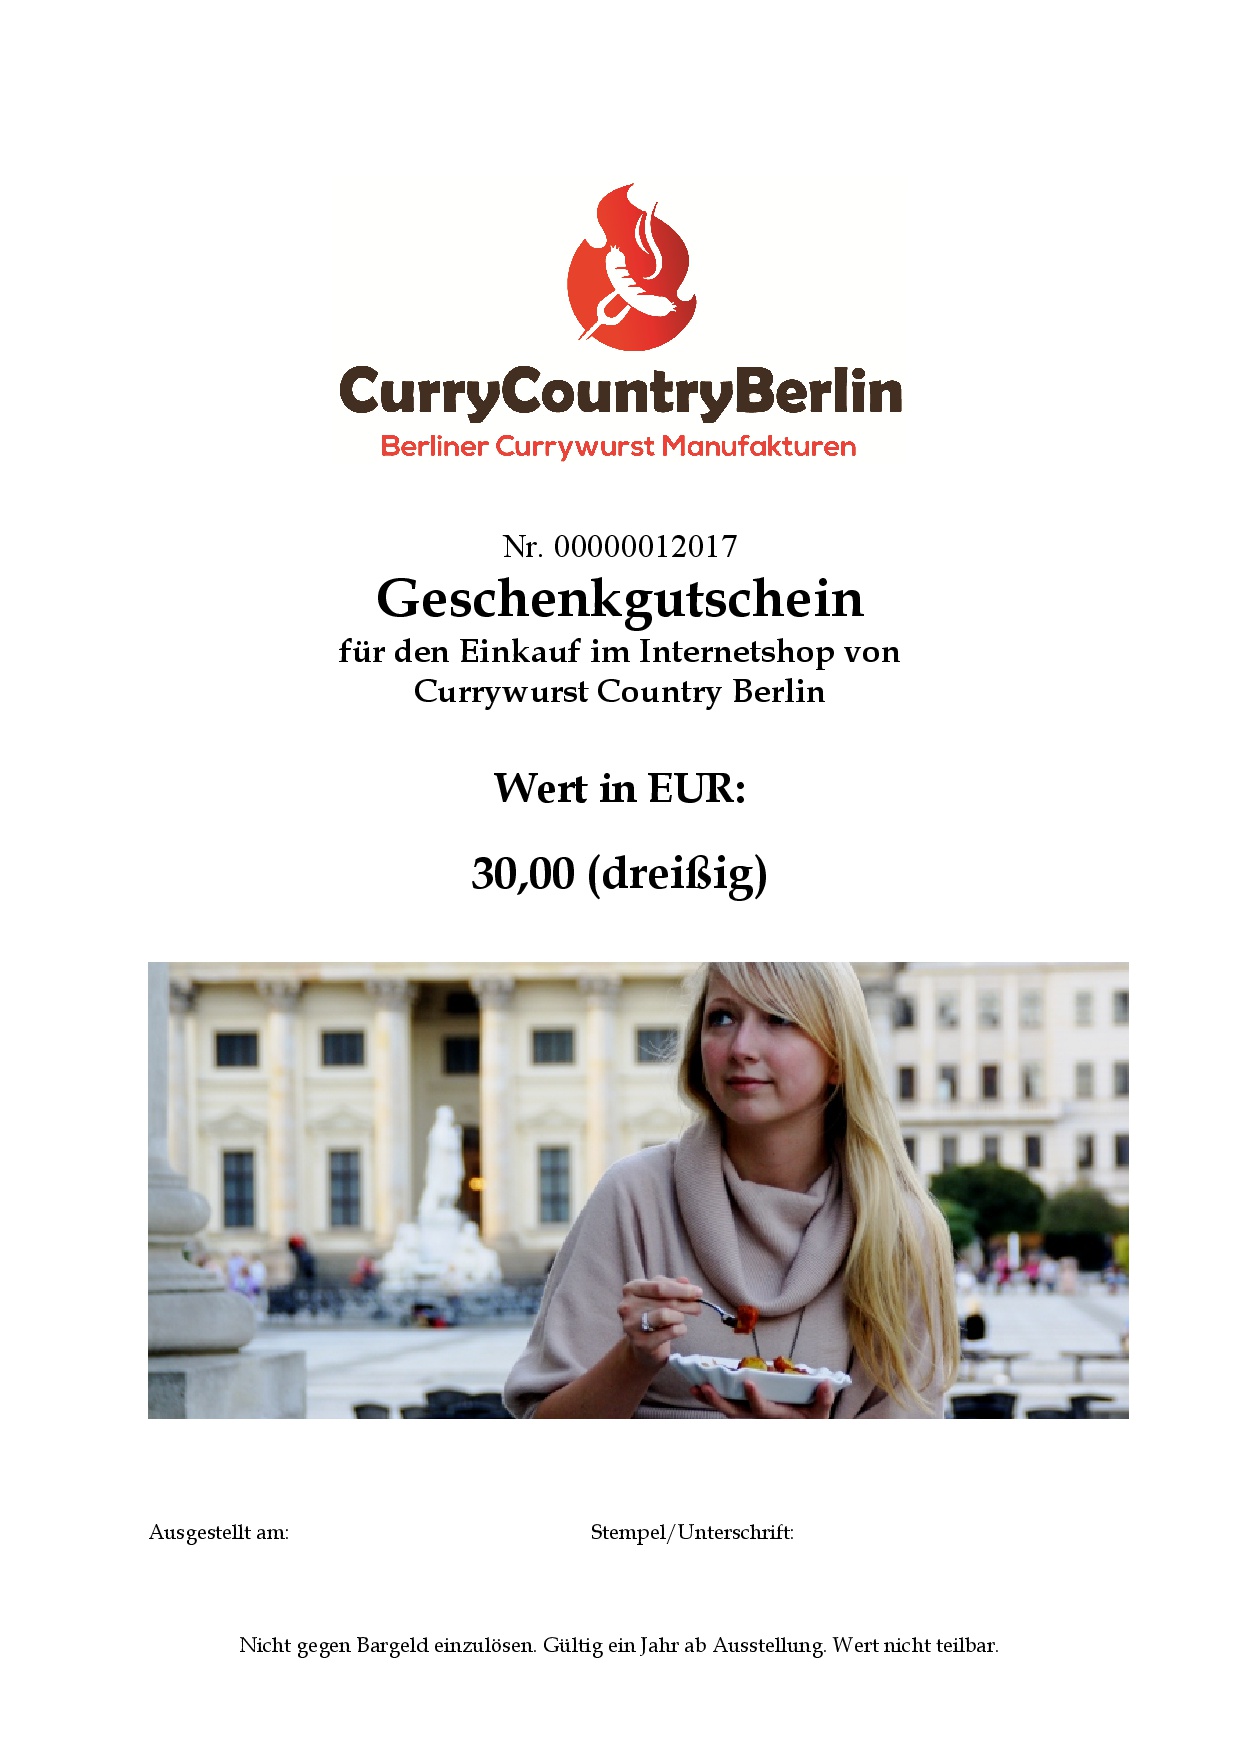 Curry Gutschein -30 EUR-